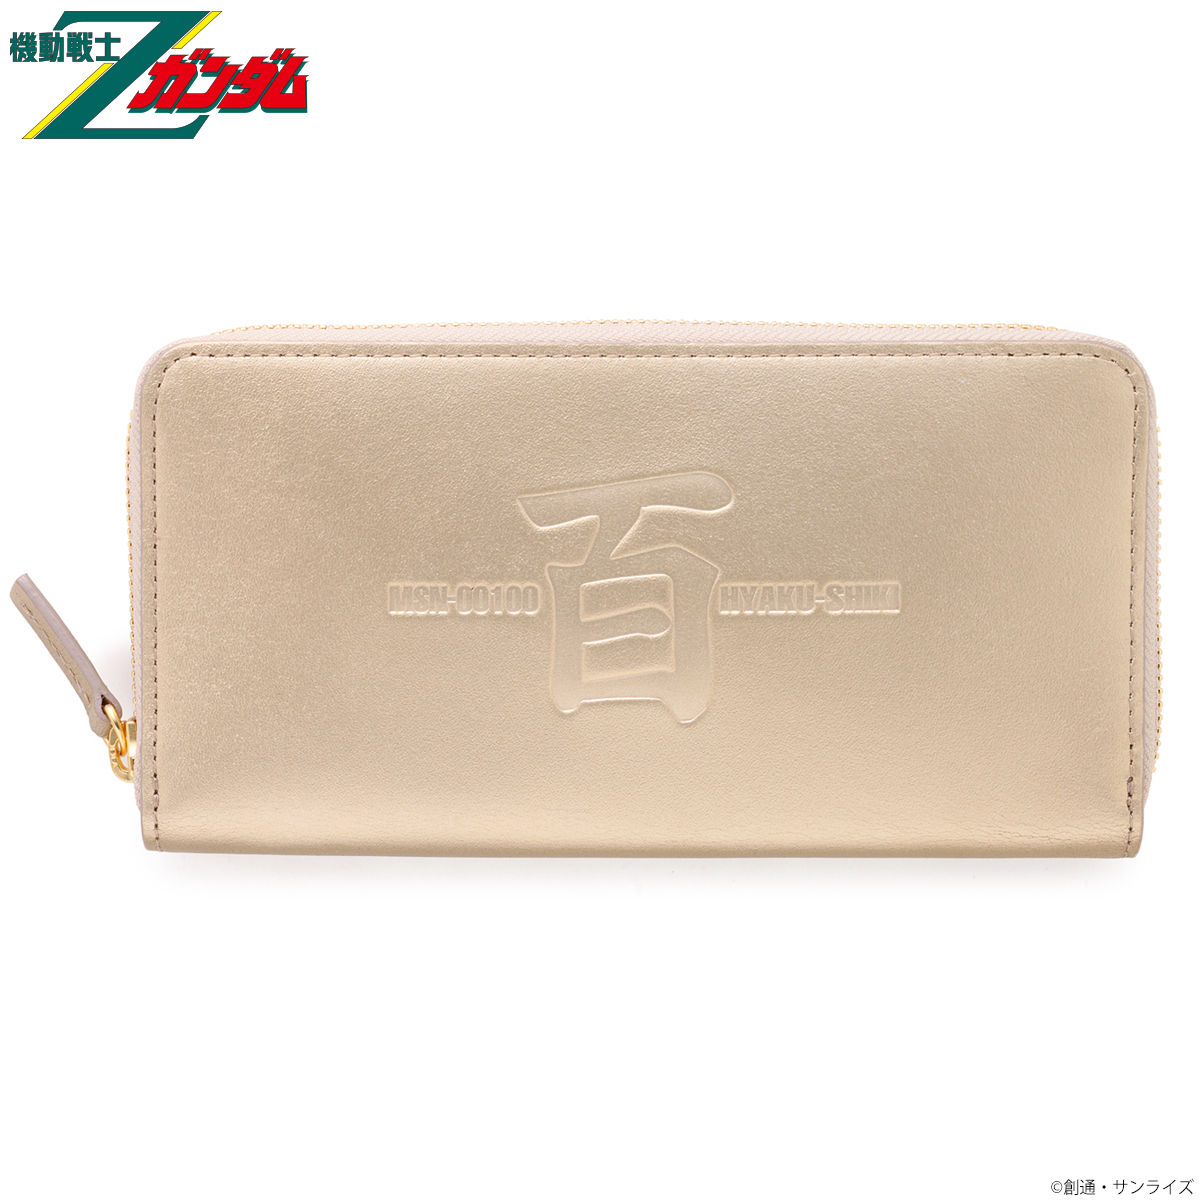 Mobile Suit Zeta Gundam MSN-00100 Long Wallet